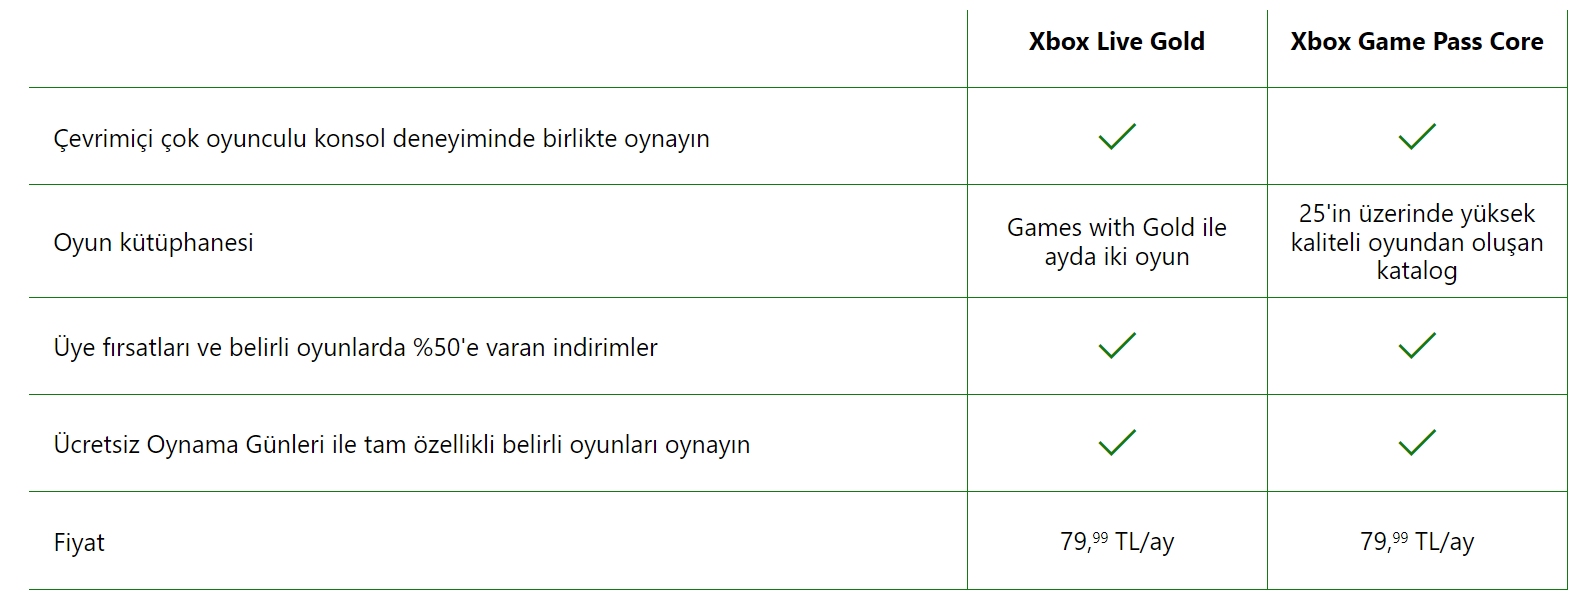 Meral Erden: Xbox Live Gold'Un Yerine Geçecek Game Pass Core'Un Çıkış Tarihi Açıklandı: İşte Yeni Abonelikte Yer Alacak İlk Oyunlar! 3